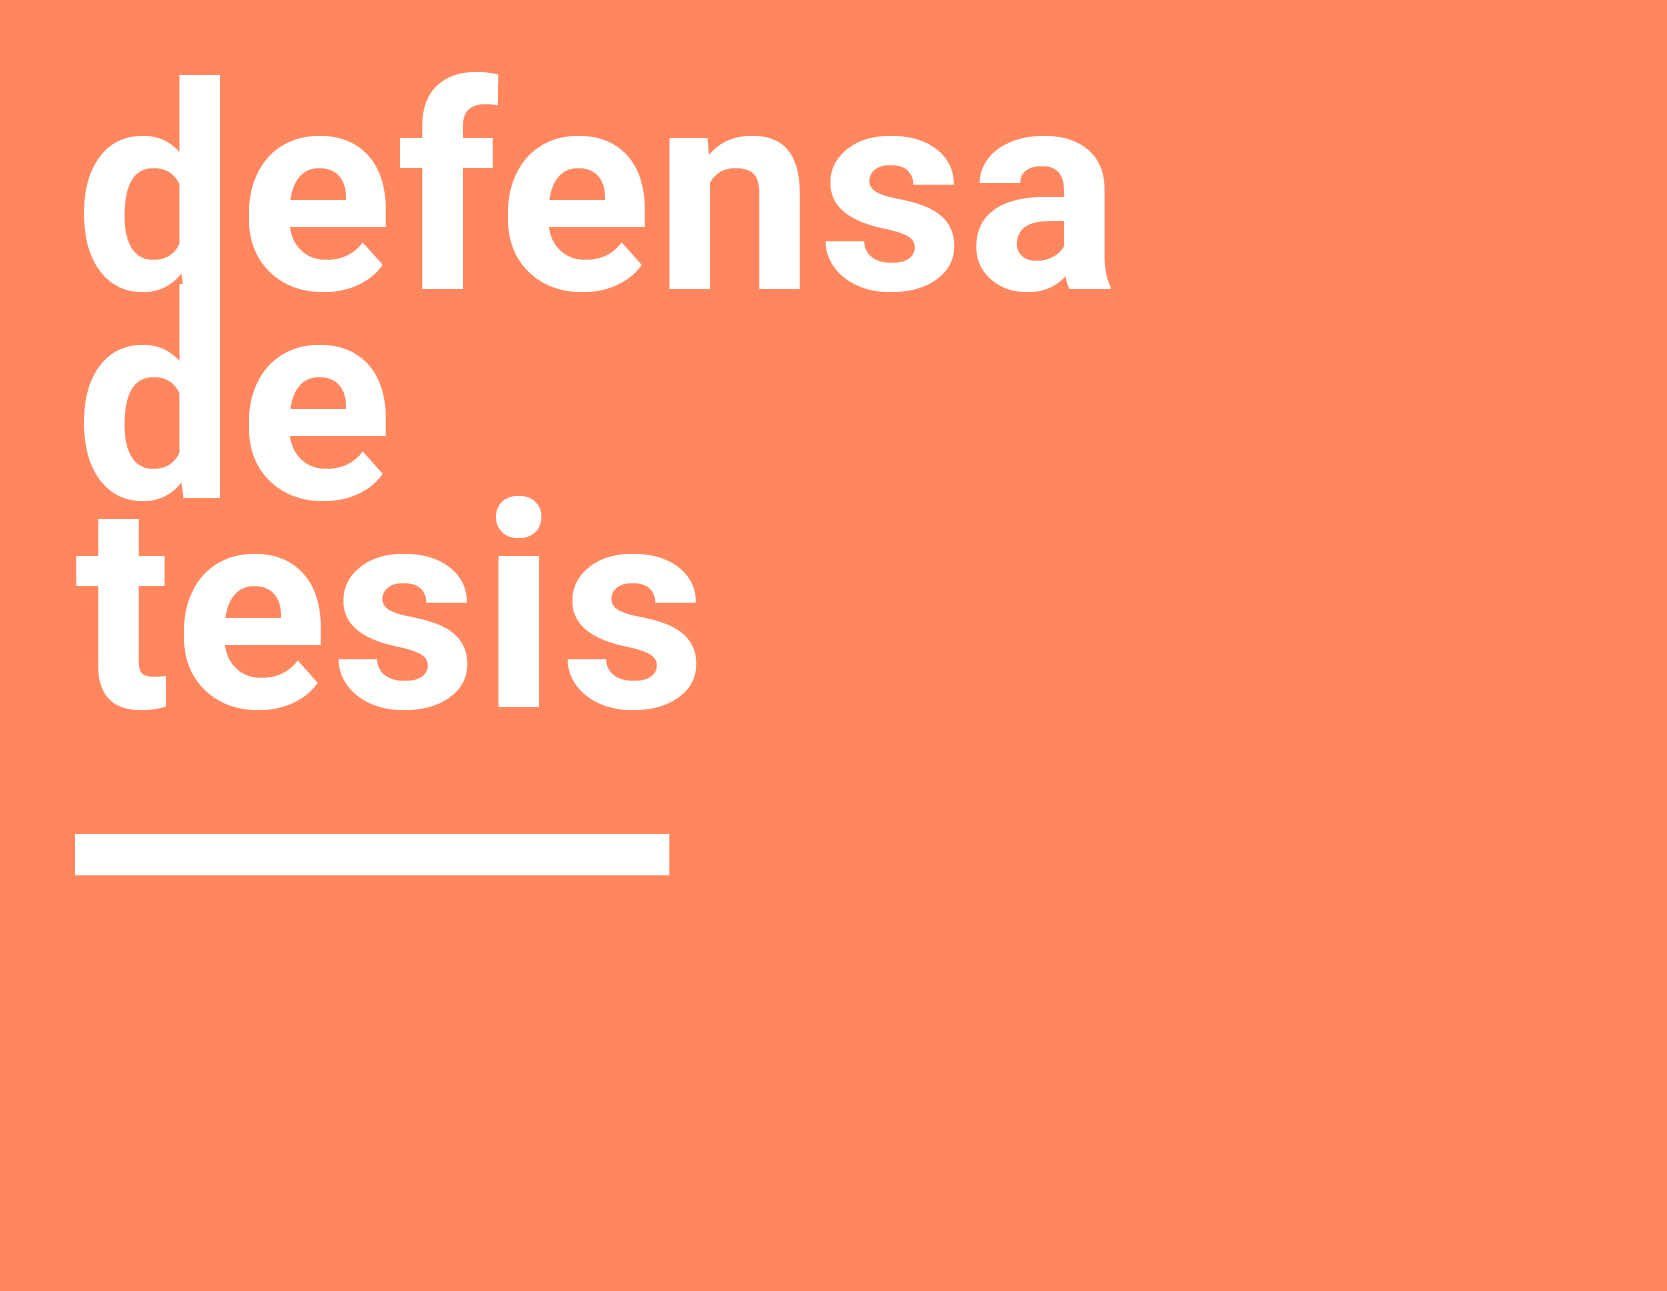 Defensa de Tesis MDU | Oscar Moreno Beltrán